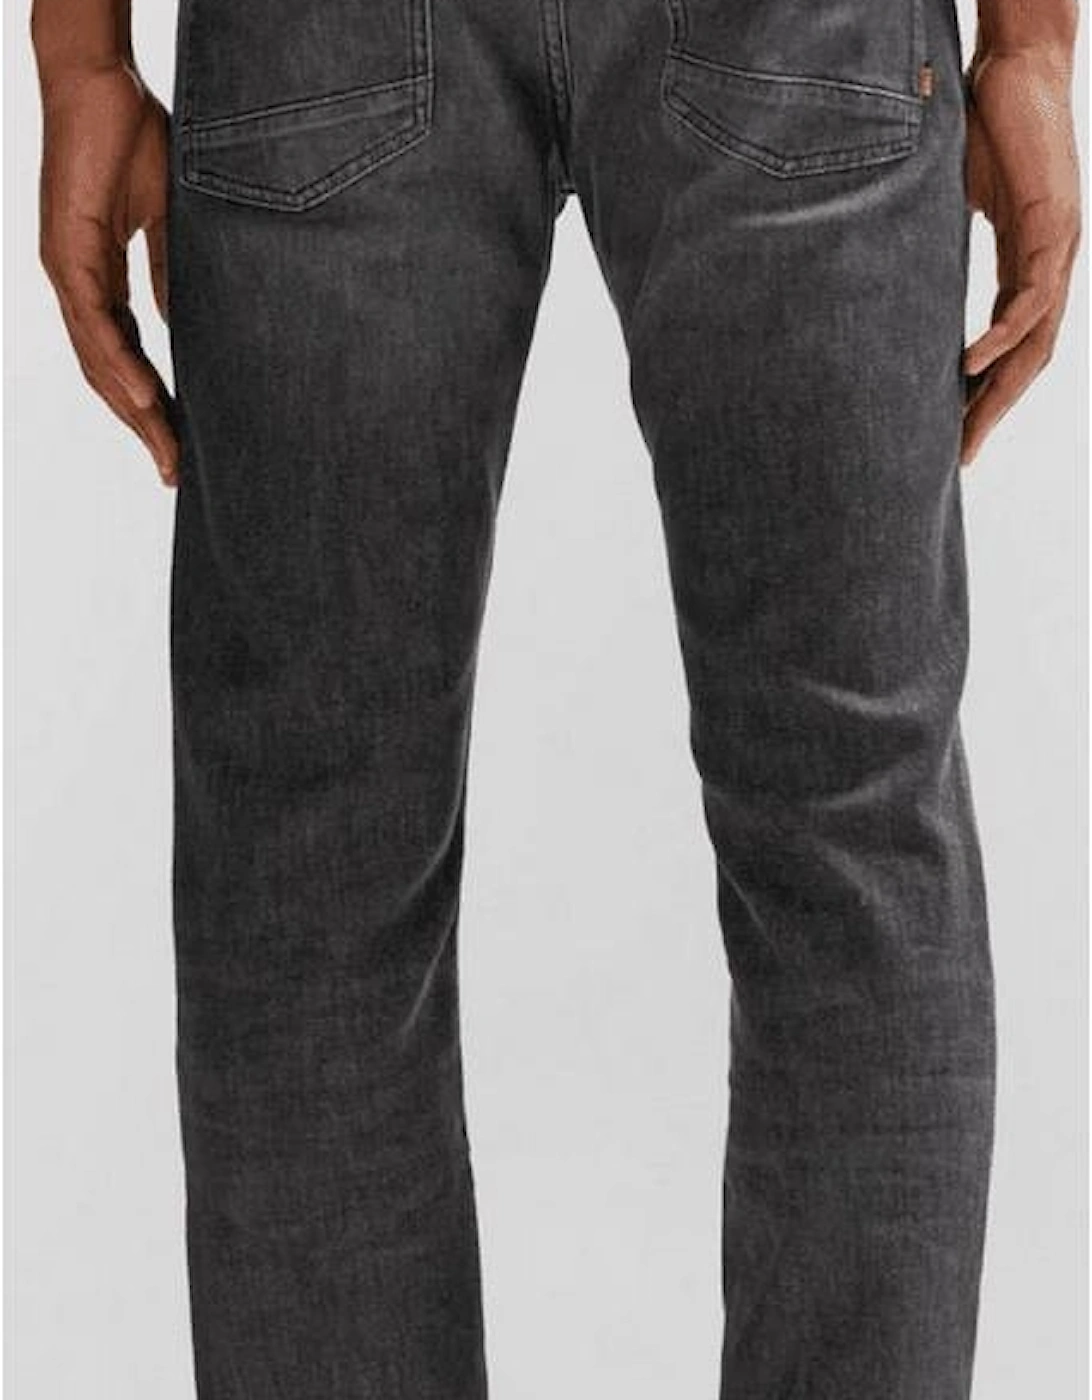 Delaware Regular Rise Slim Fit Dark Grey Jeans